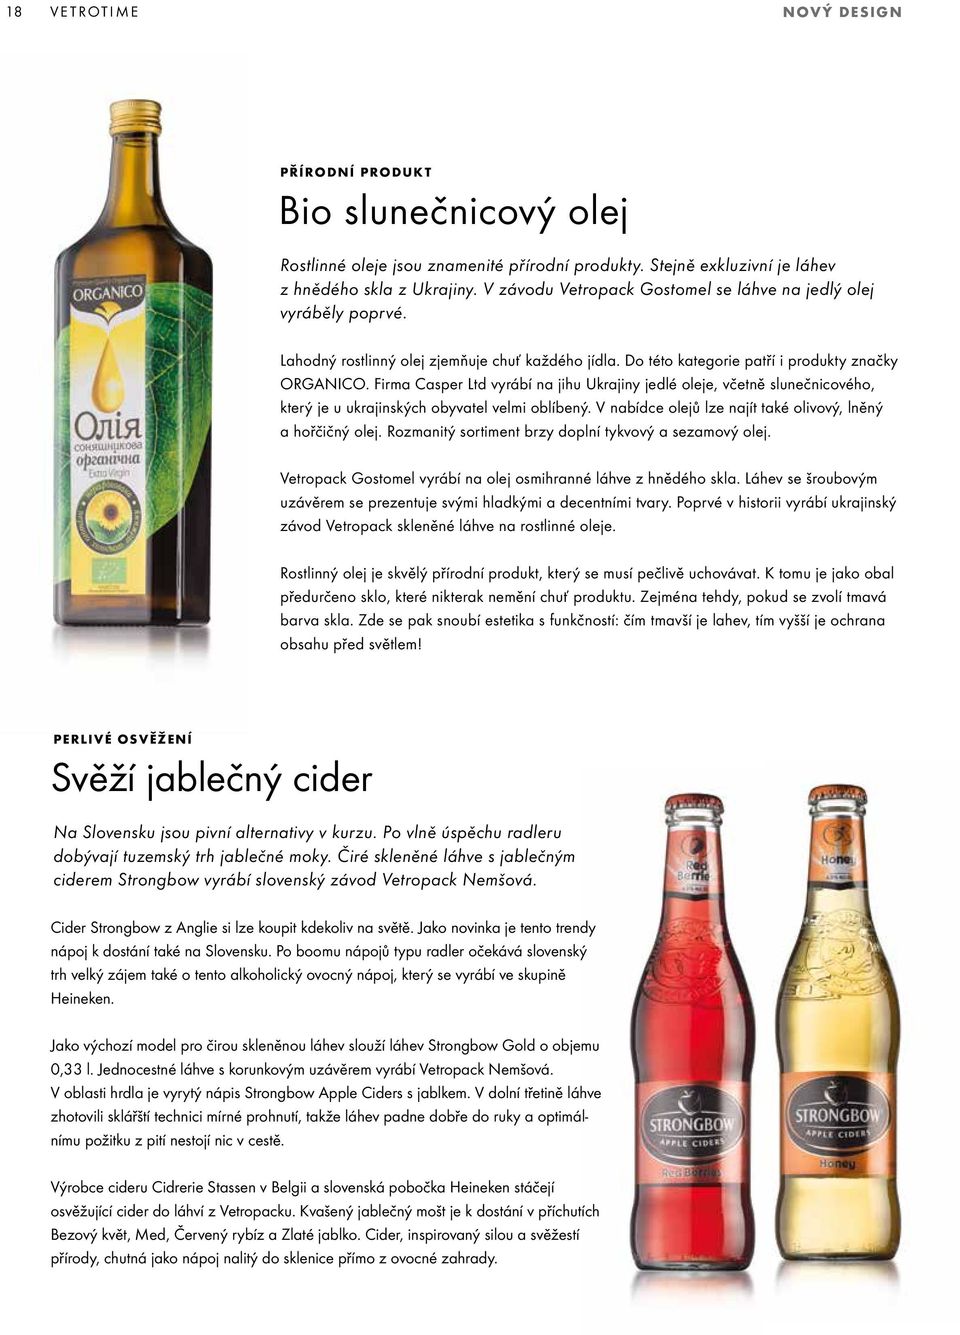 Firma Casper Ltd vyrábí na jihu Ukrajiny jedlé oleje, včetně slunečnicového, který je u ukrajinských obyvatel velmi oblíbený. V nabídce olejů lze najít také olivový, lněný a hořčičný olej.